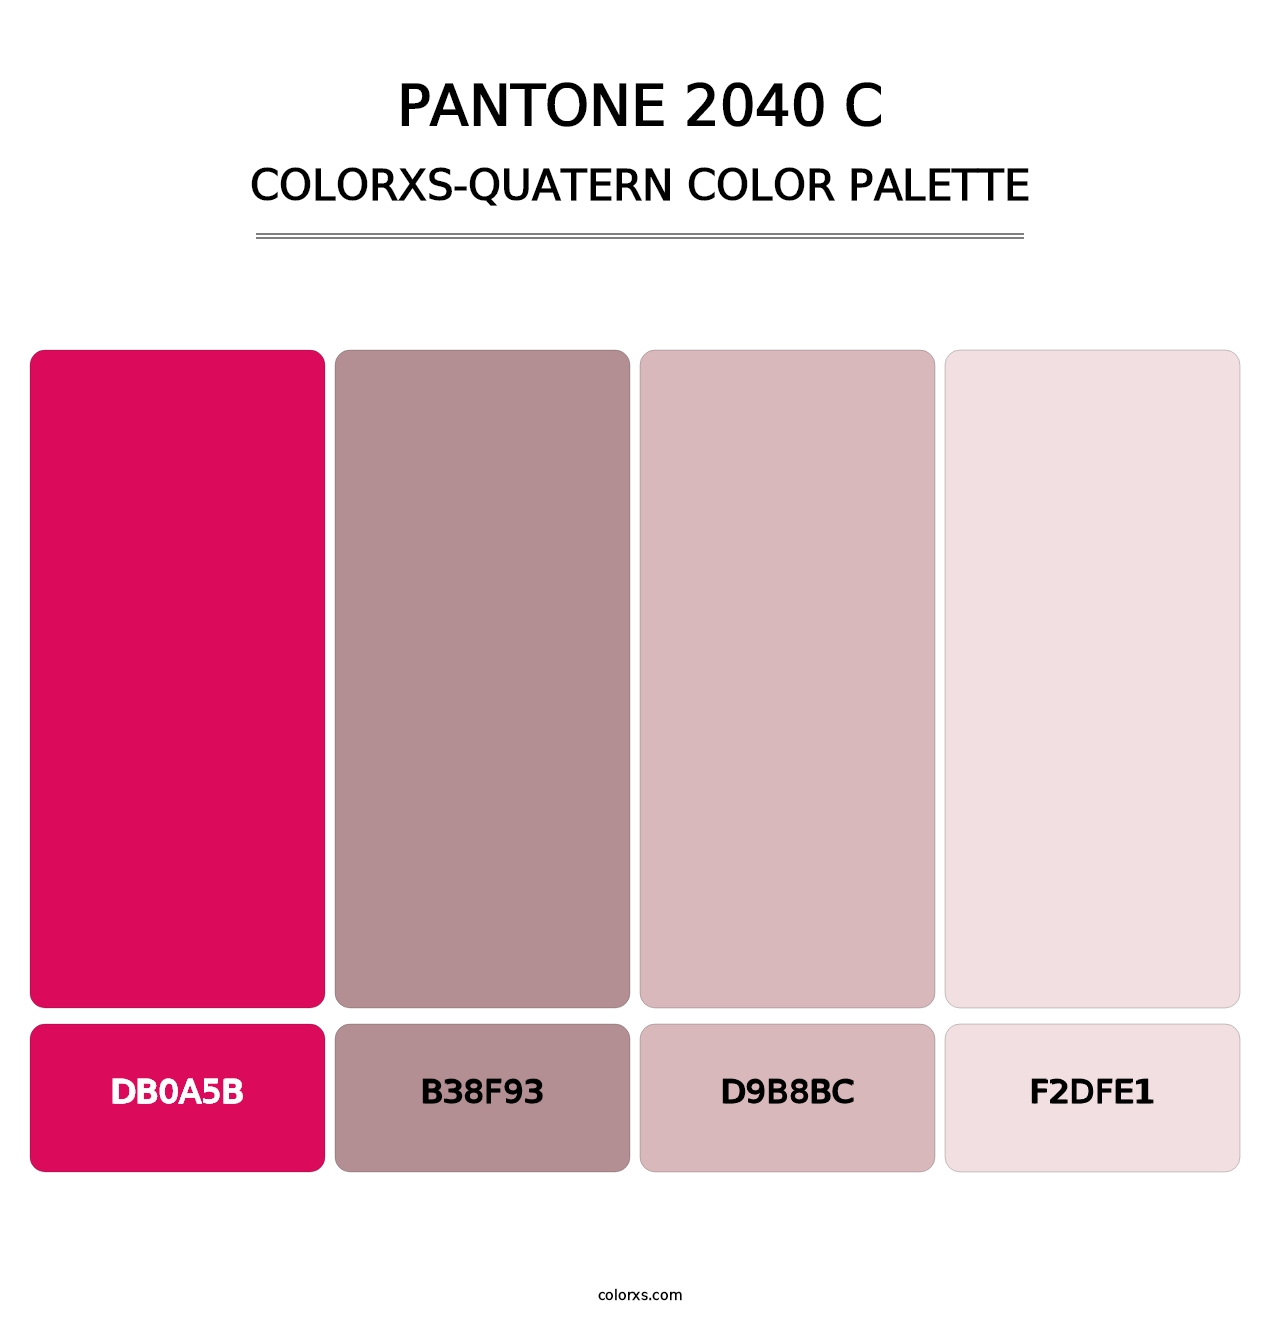 PANTONE 2040 C - Colorxs Quatern Palette